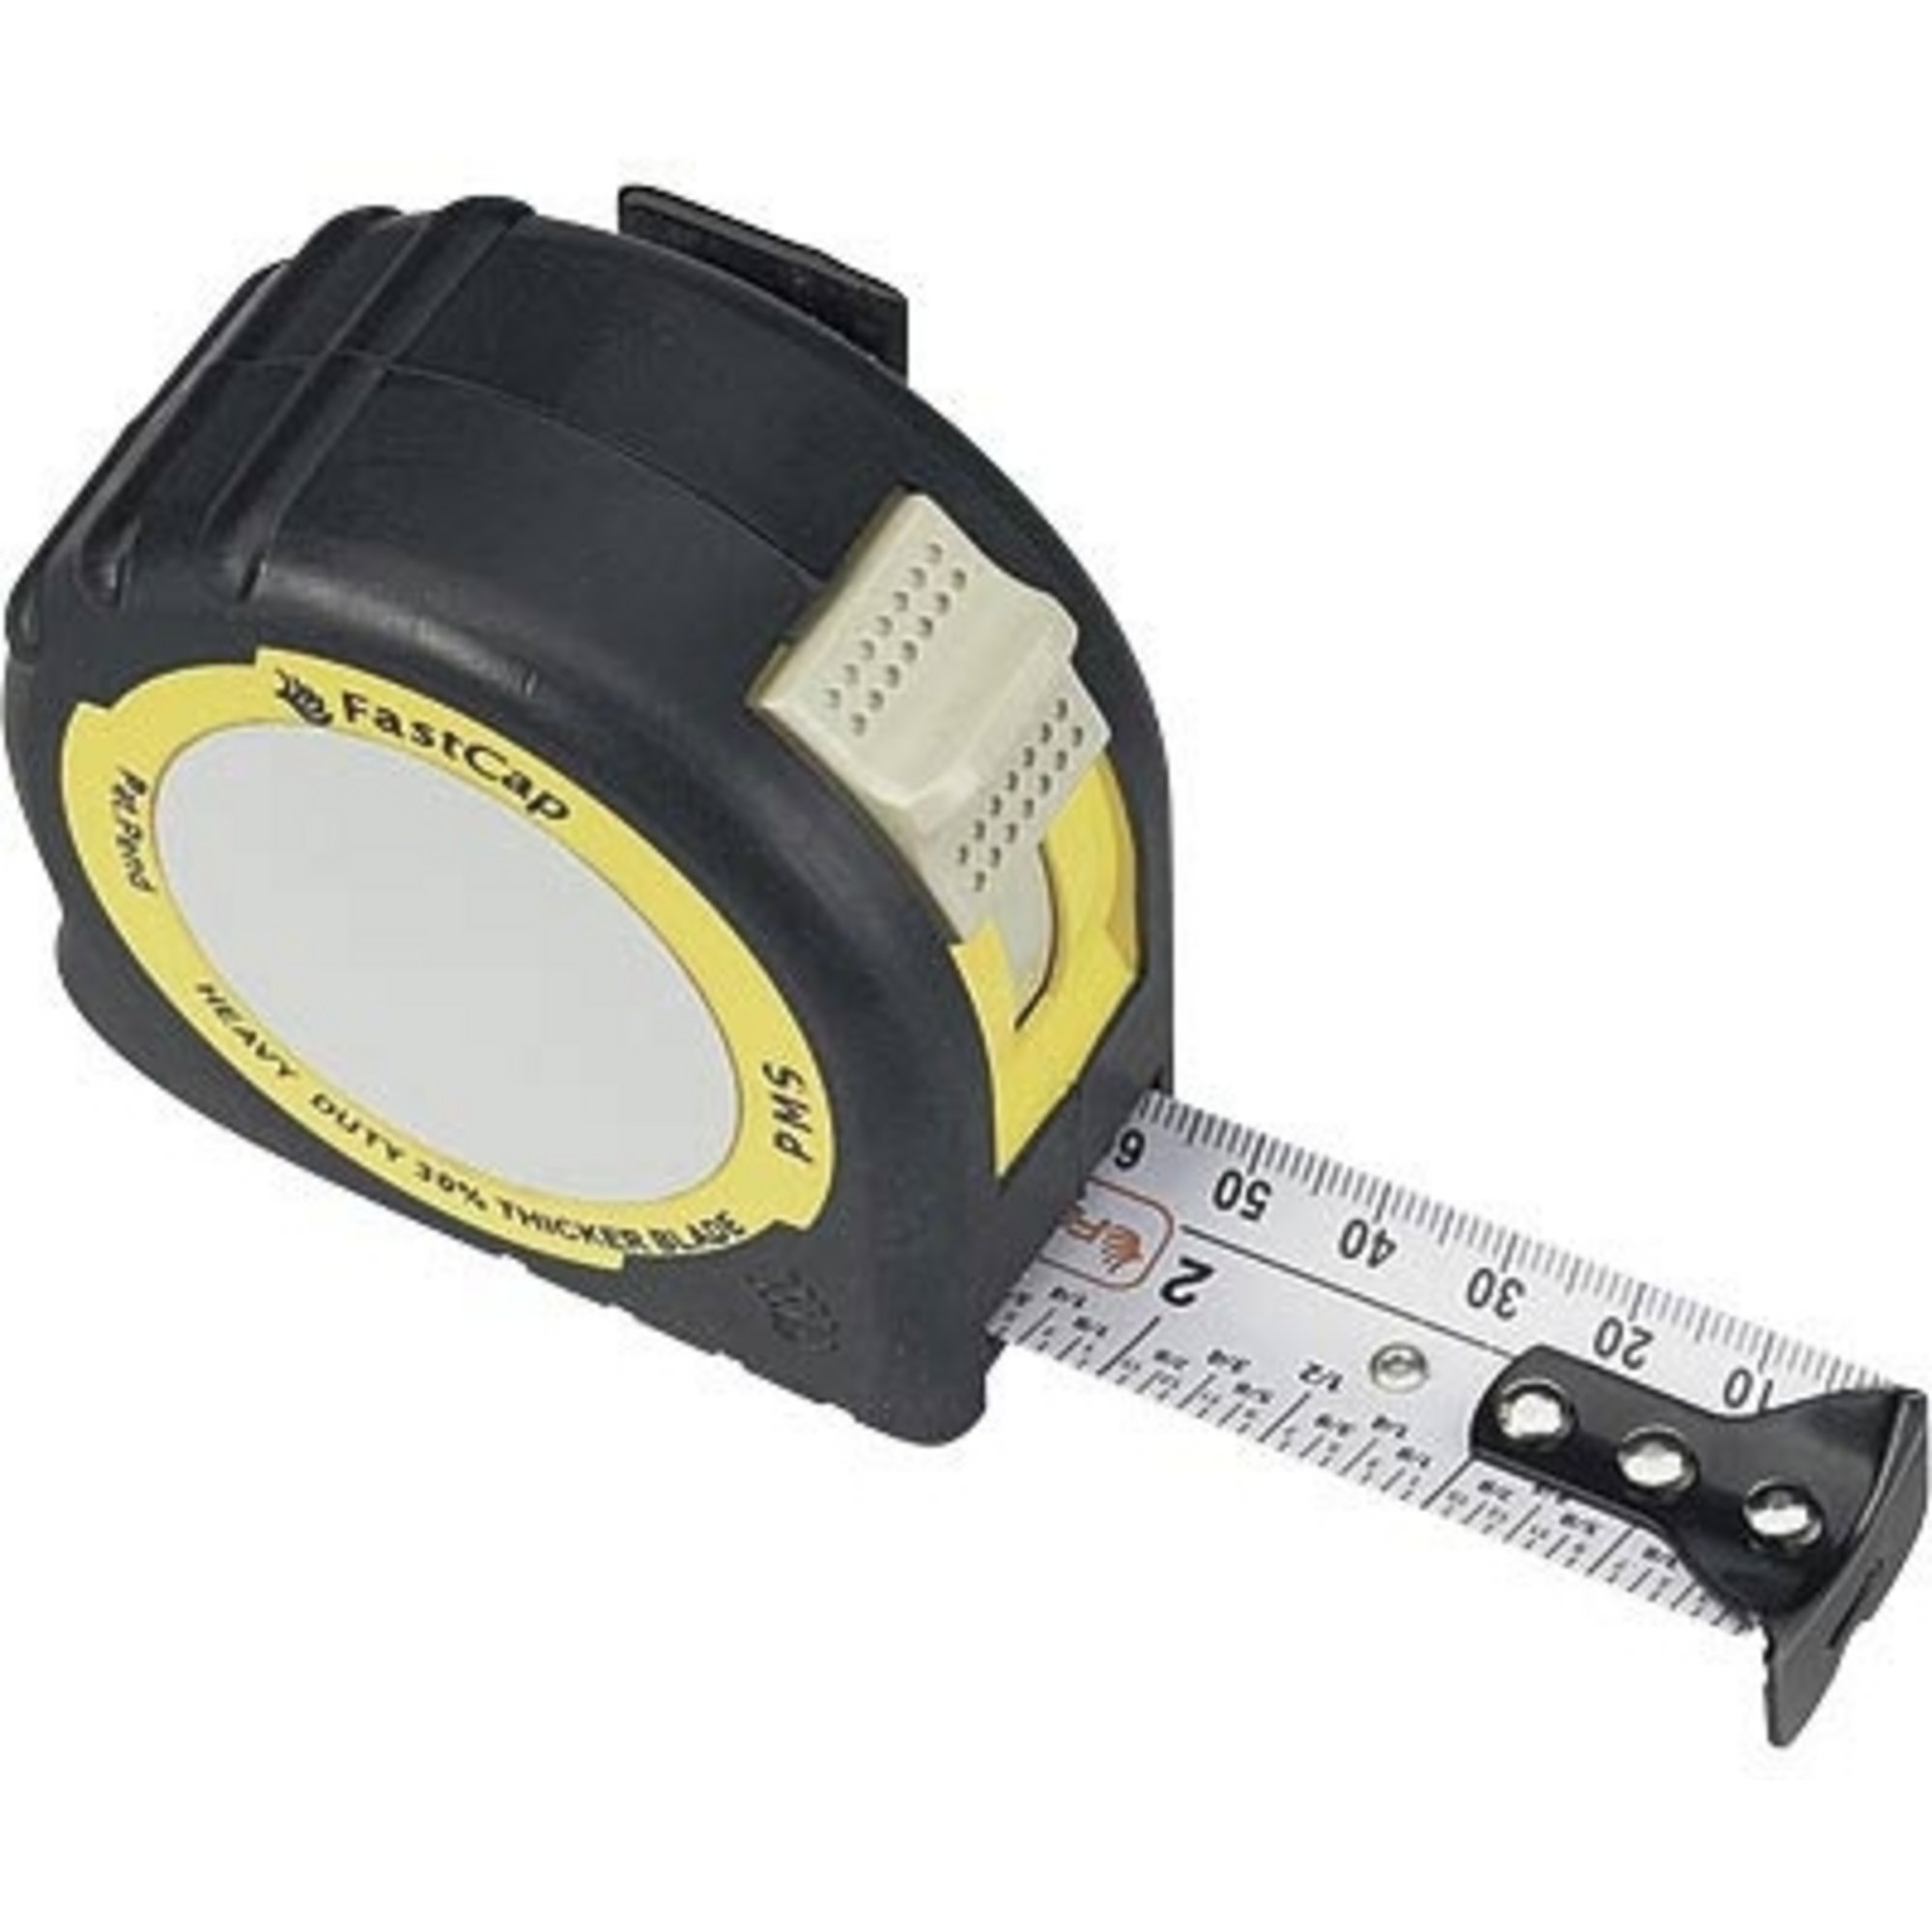 Fastcap Metric/Standard Tape Measures - Length 16 Ft.